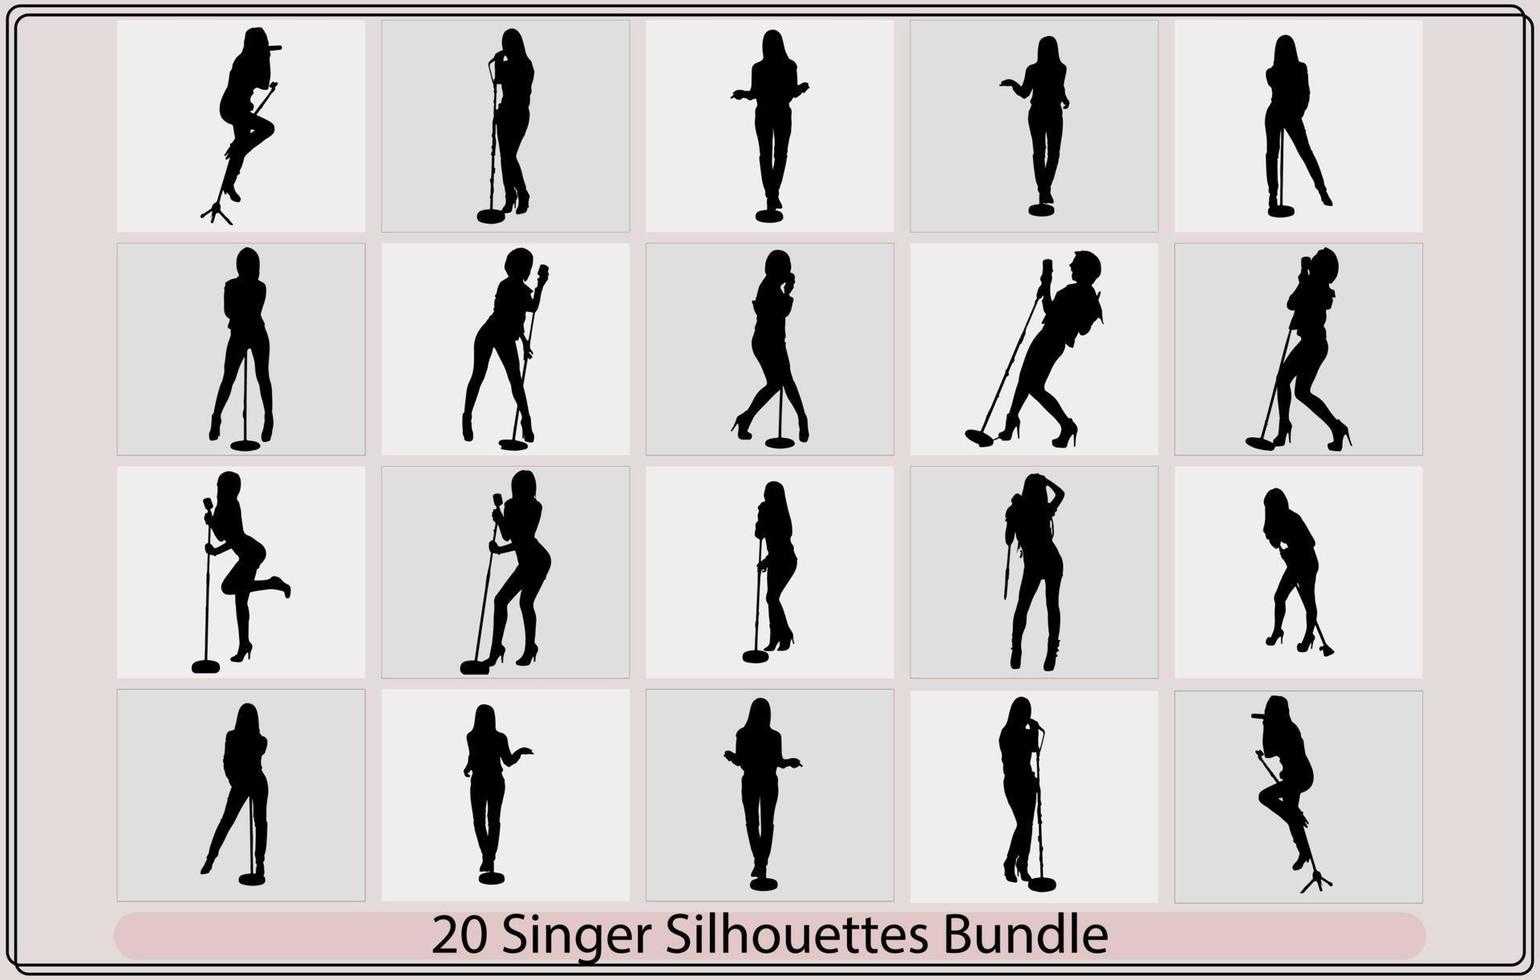 Hommes et femmes chanteur silhouettes dans différent pose, chanteur collecte, chant dans silhouette, mâle chanteur vecteur illustration